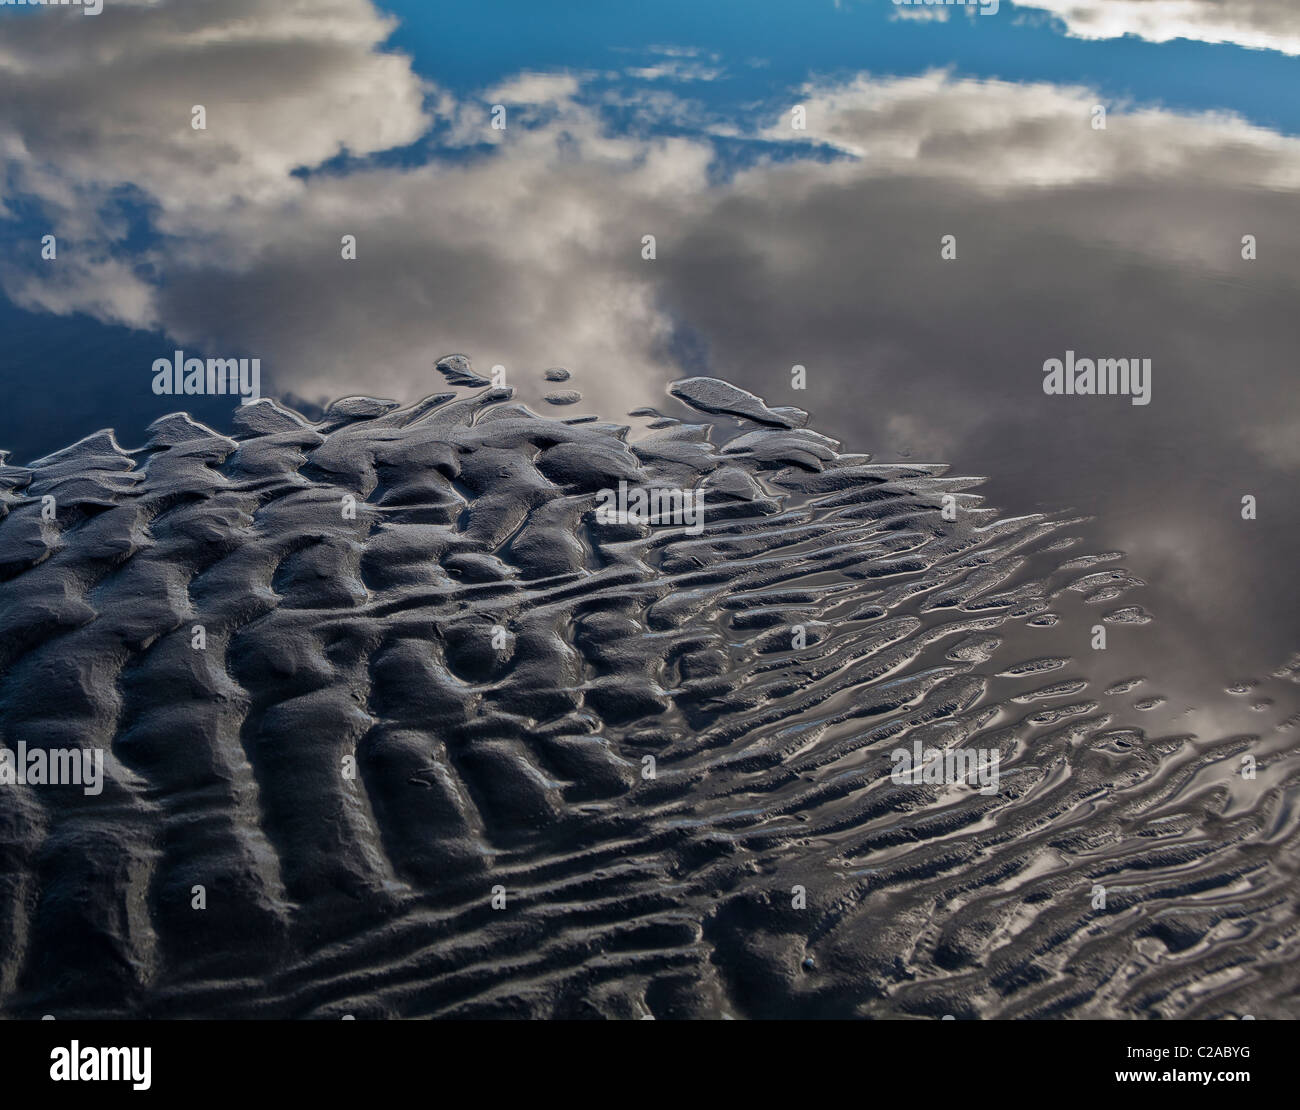 Image miroir, nuages, black Sands, de l'eau Banque D'Images